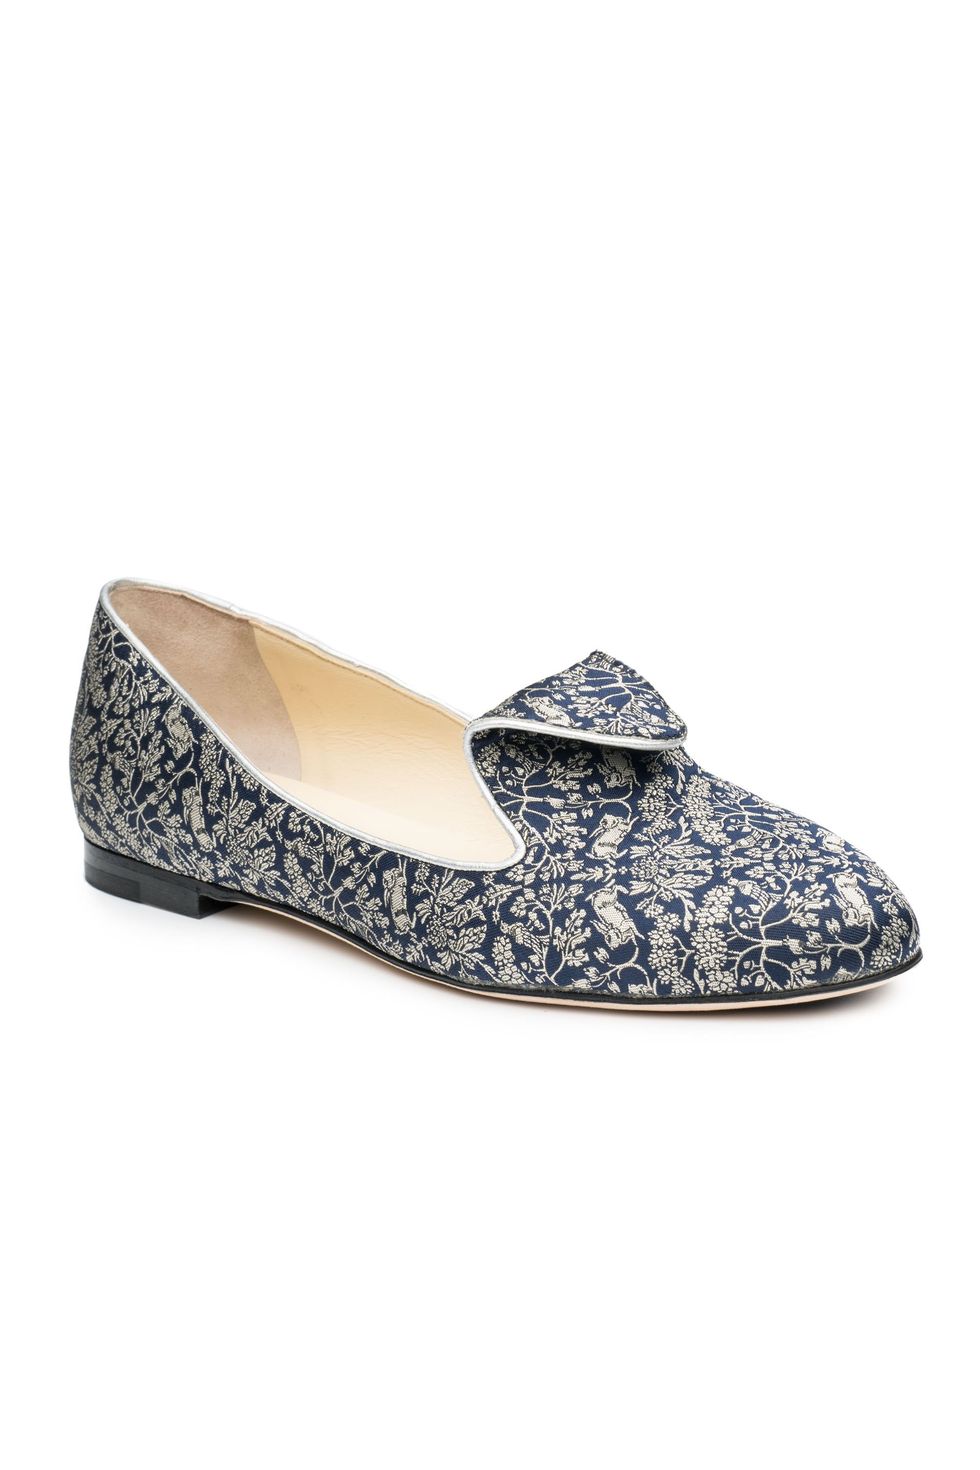 Meghan Markle's Favorite Shoe Designer Sarah Flint Is Having a Major ...